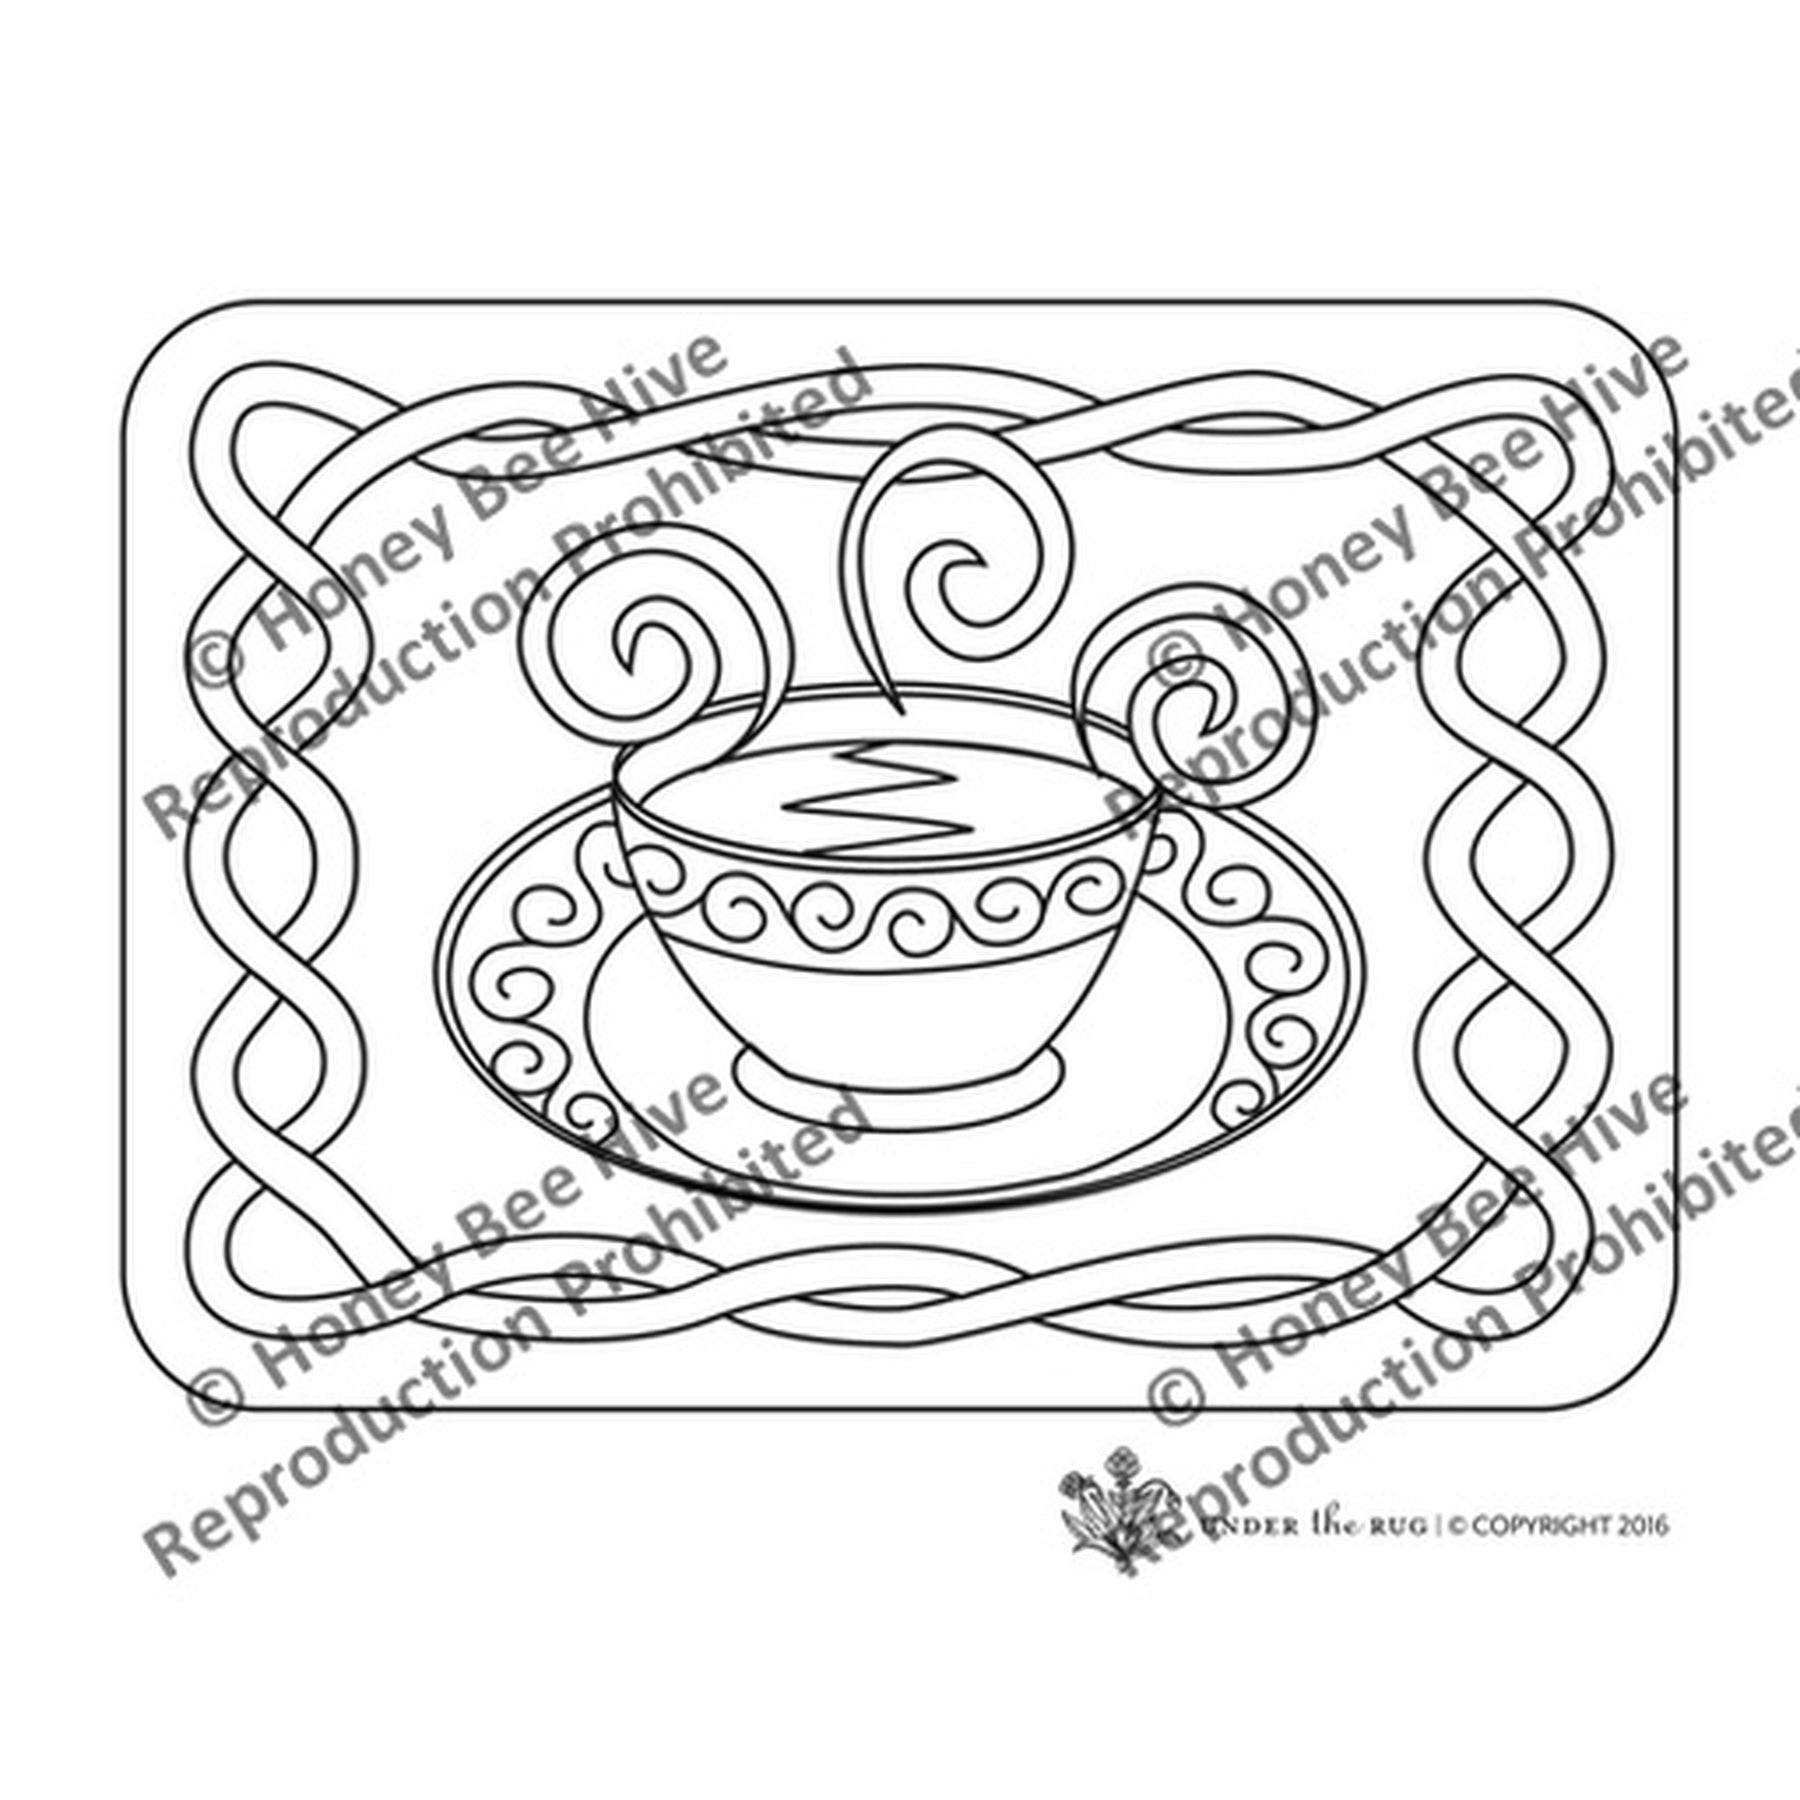 Teacup, Steam - Country Footstool Pattern, rug hooking pattern